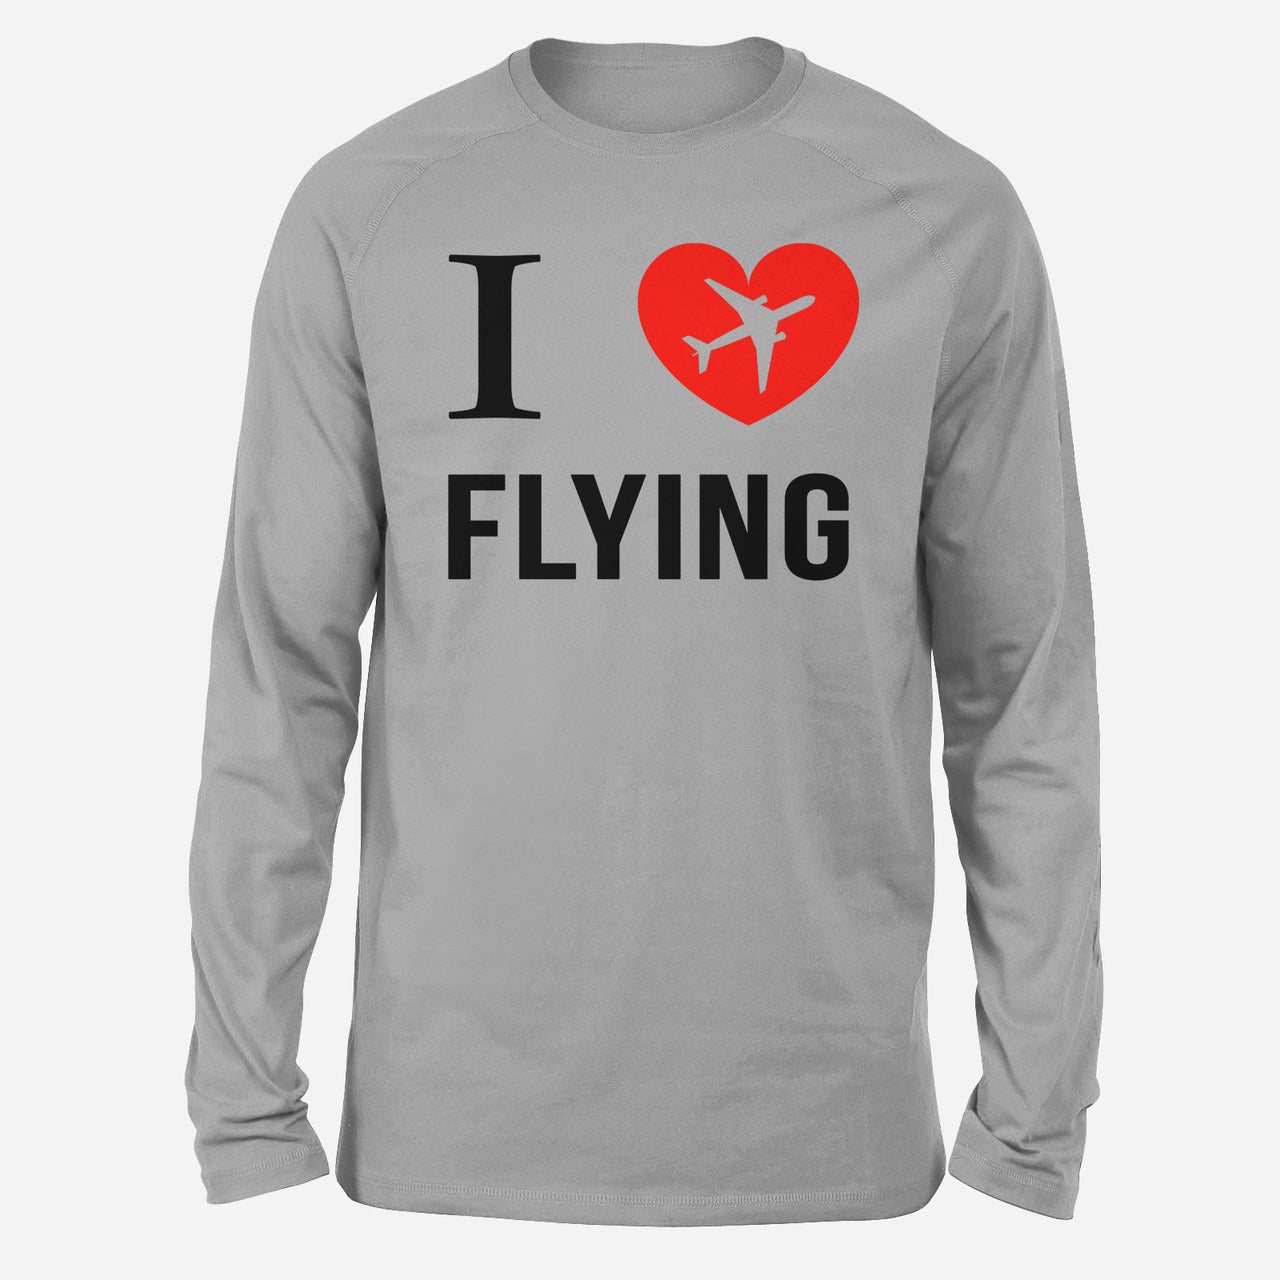 I Love Flying Designed Long-Sleeve T-Shirts